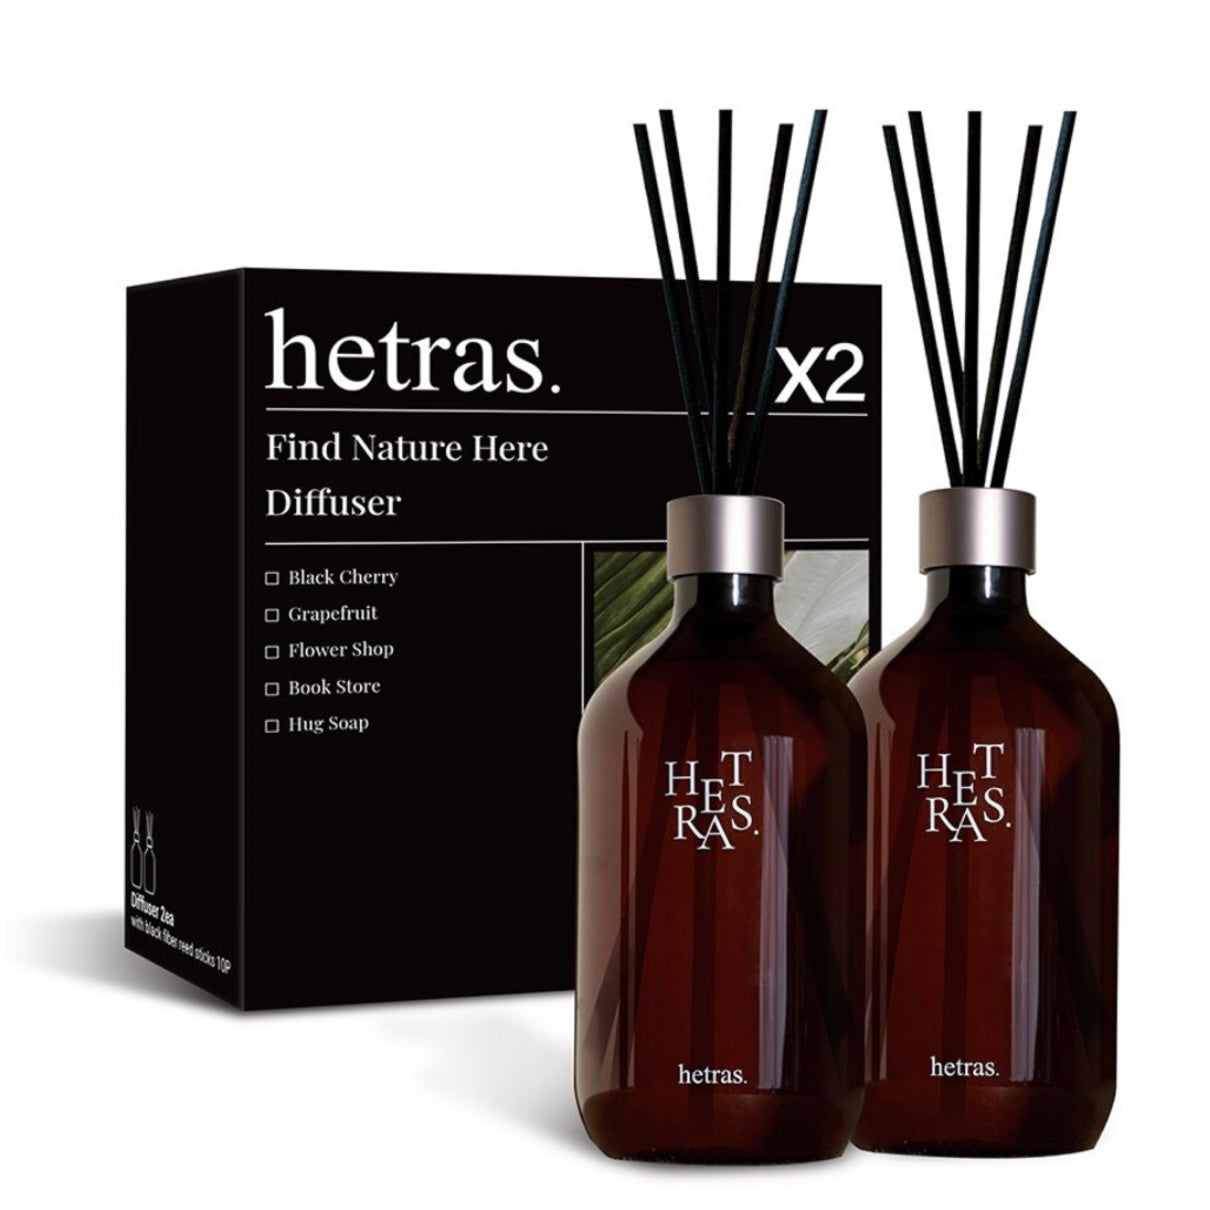 質感HETRAS居家香氛擴香Hetras Premium Diffuser Set 💖超大容量禮盒組兩瓶 = 1000ML ✨